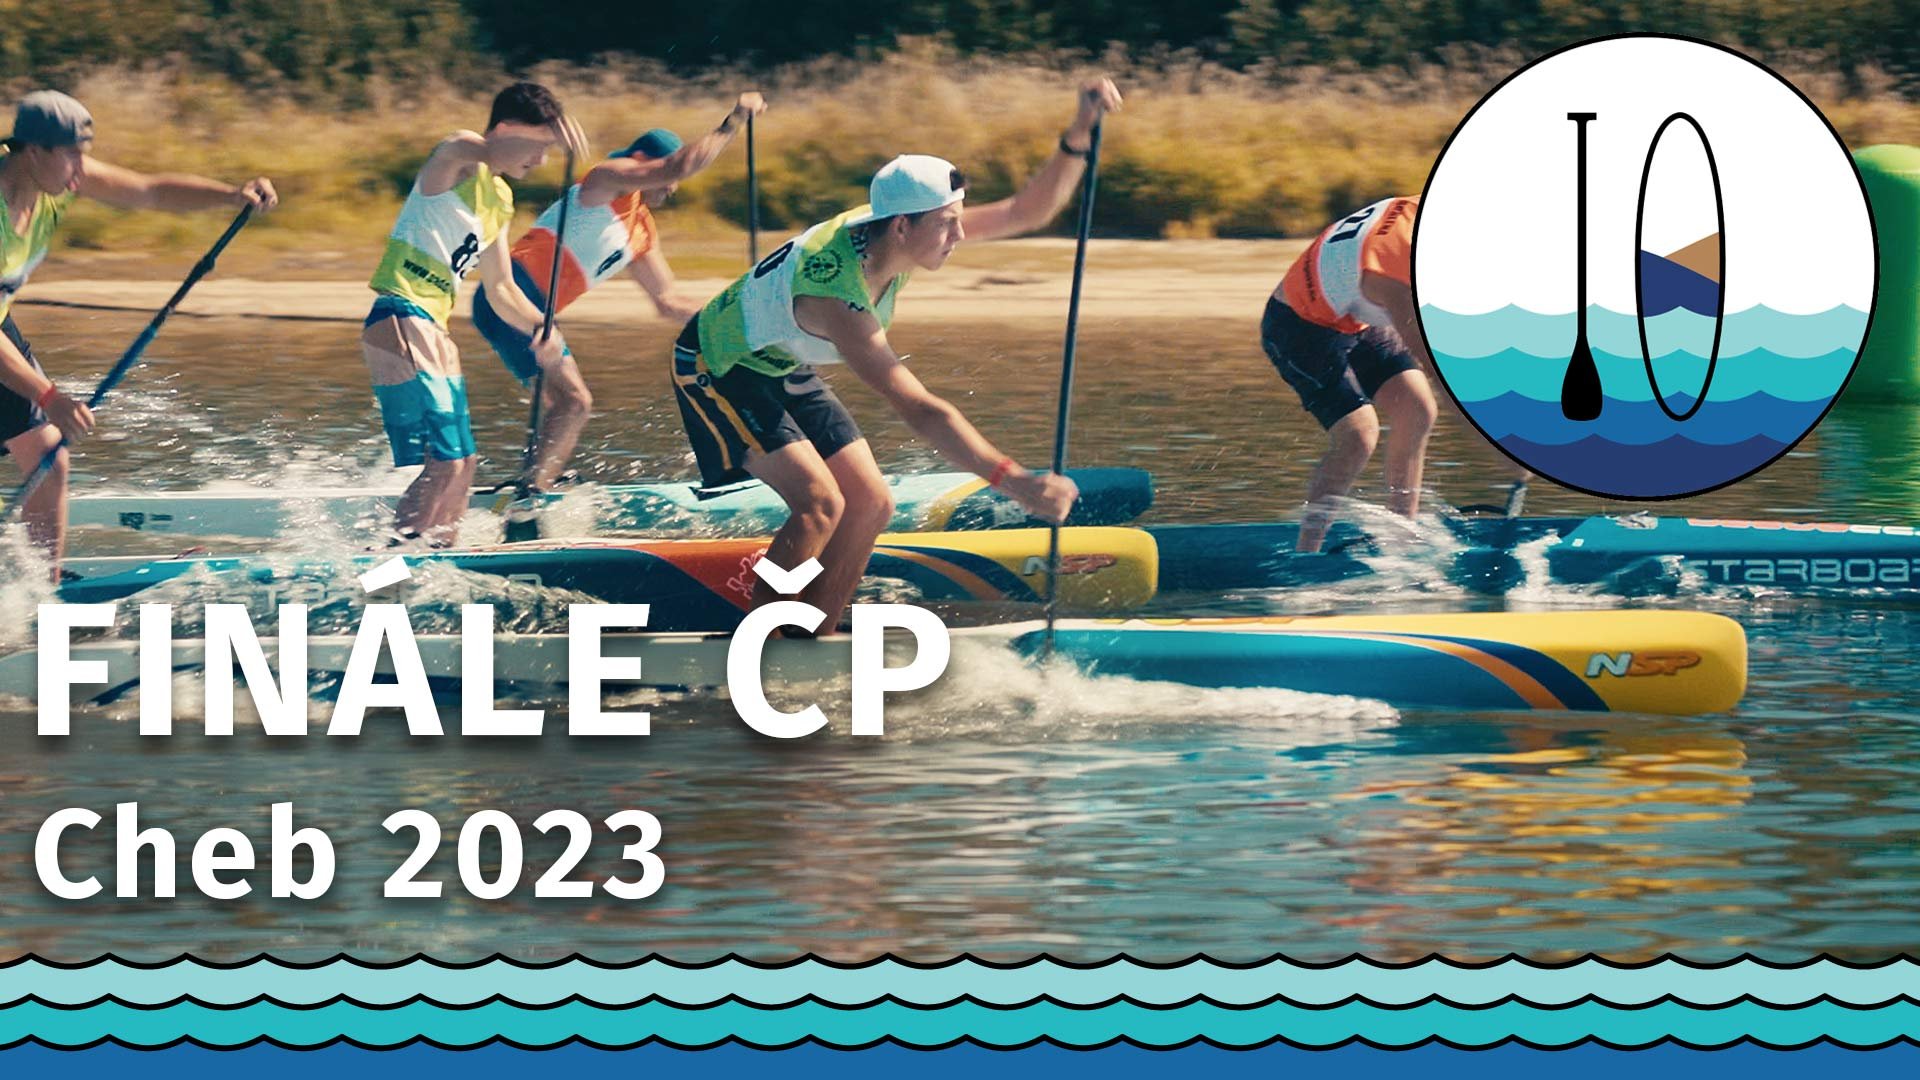 Finál Českého poháru v paddleboardingu Cheb 2023